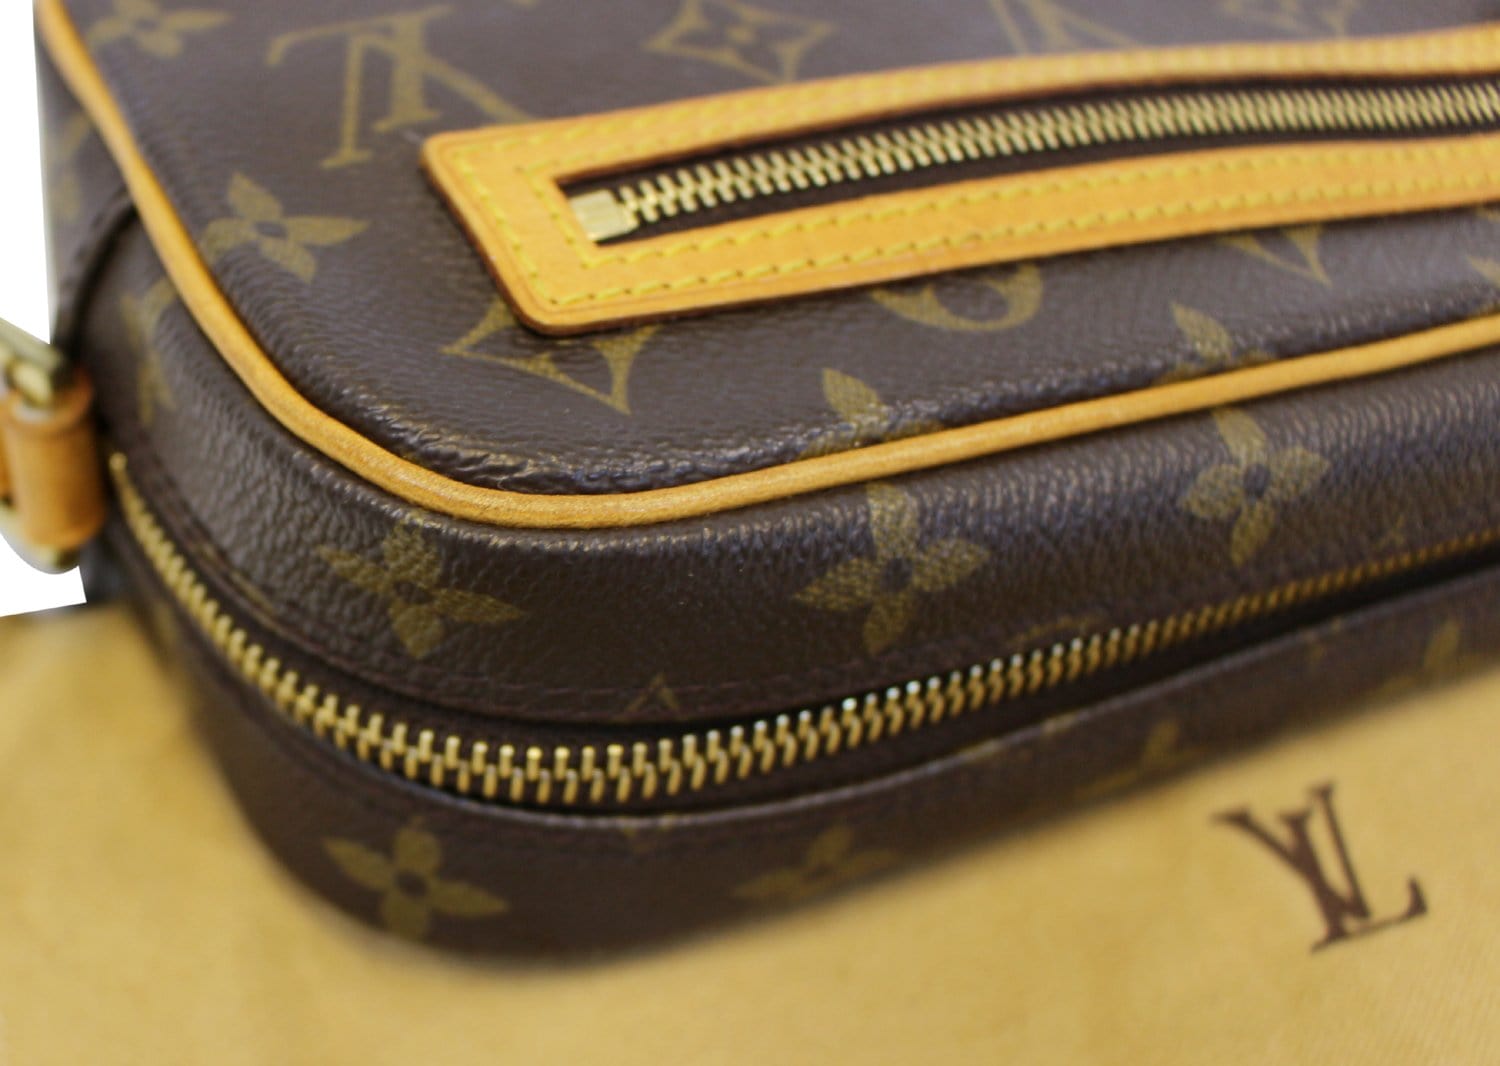 Louis+Vuitton+Pochette+Cite+Shoulder+Bag+Brown+Leather for sale online